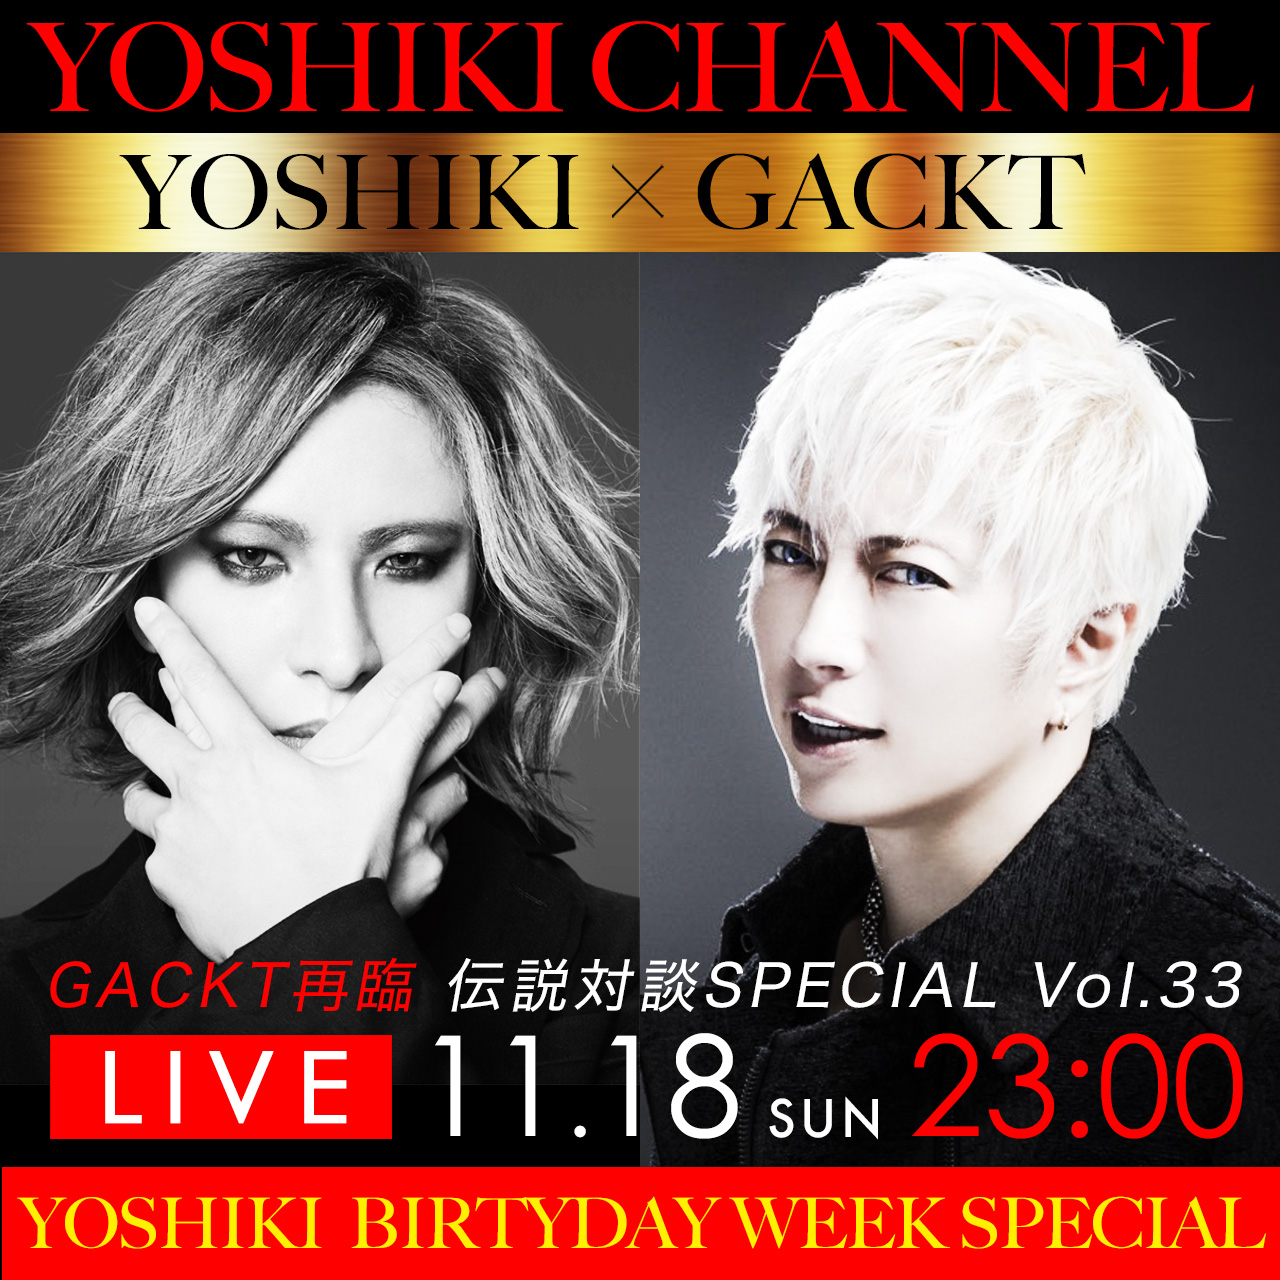 Yoshiki Channel Yoshiki Birthday Week Special Gackt一年ぶりの降臨 18日gacktをゲストに迎えた人気企画 レジェンド対談 放送決定 Yoshiki Pr事務局のプレスリリース